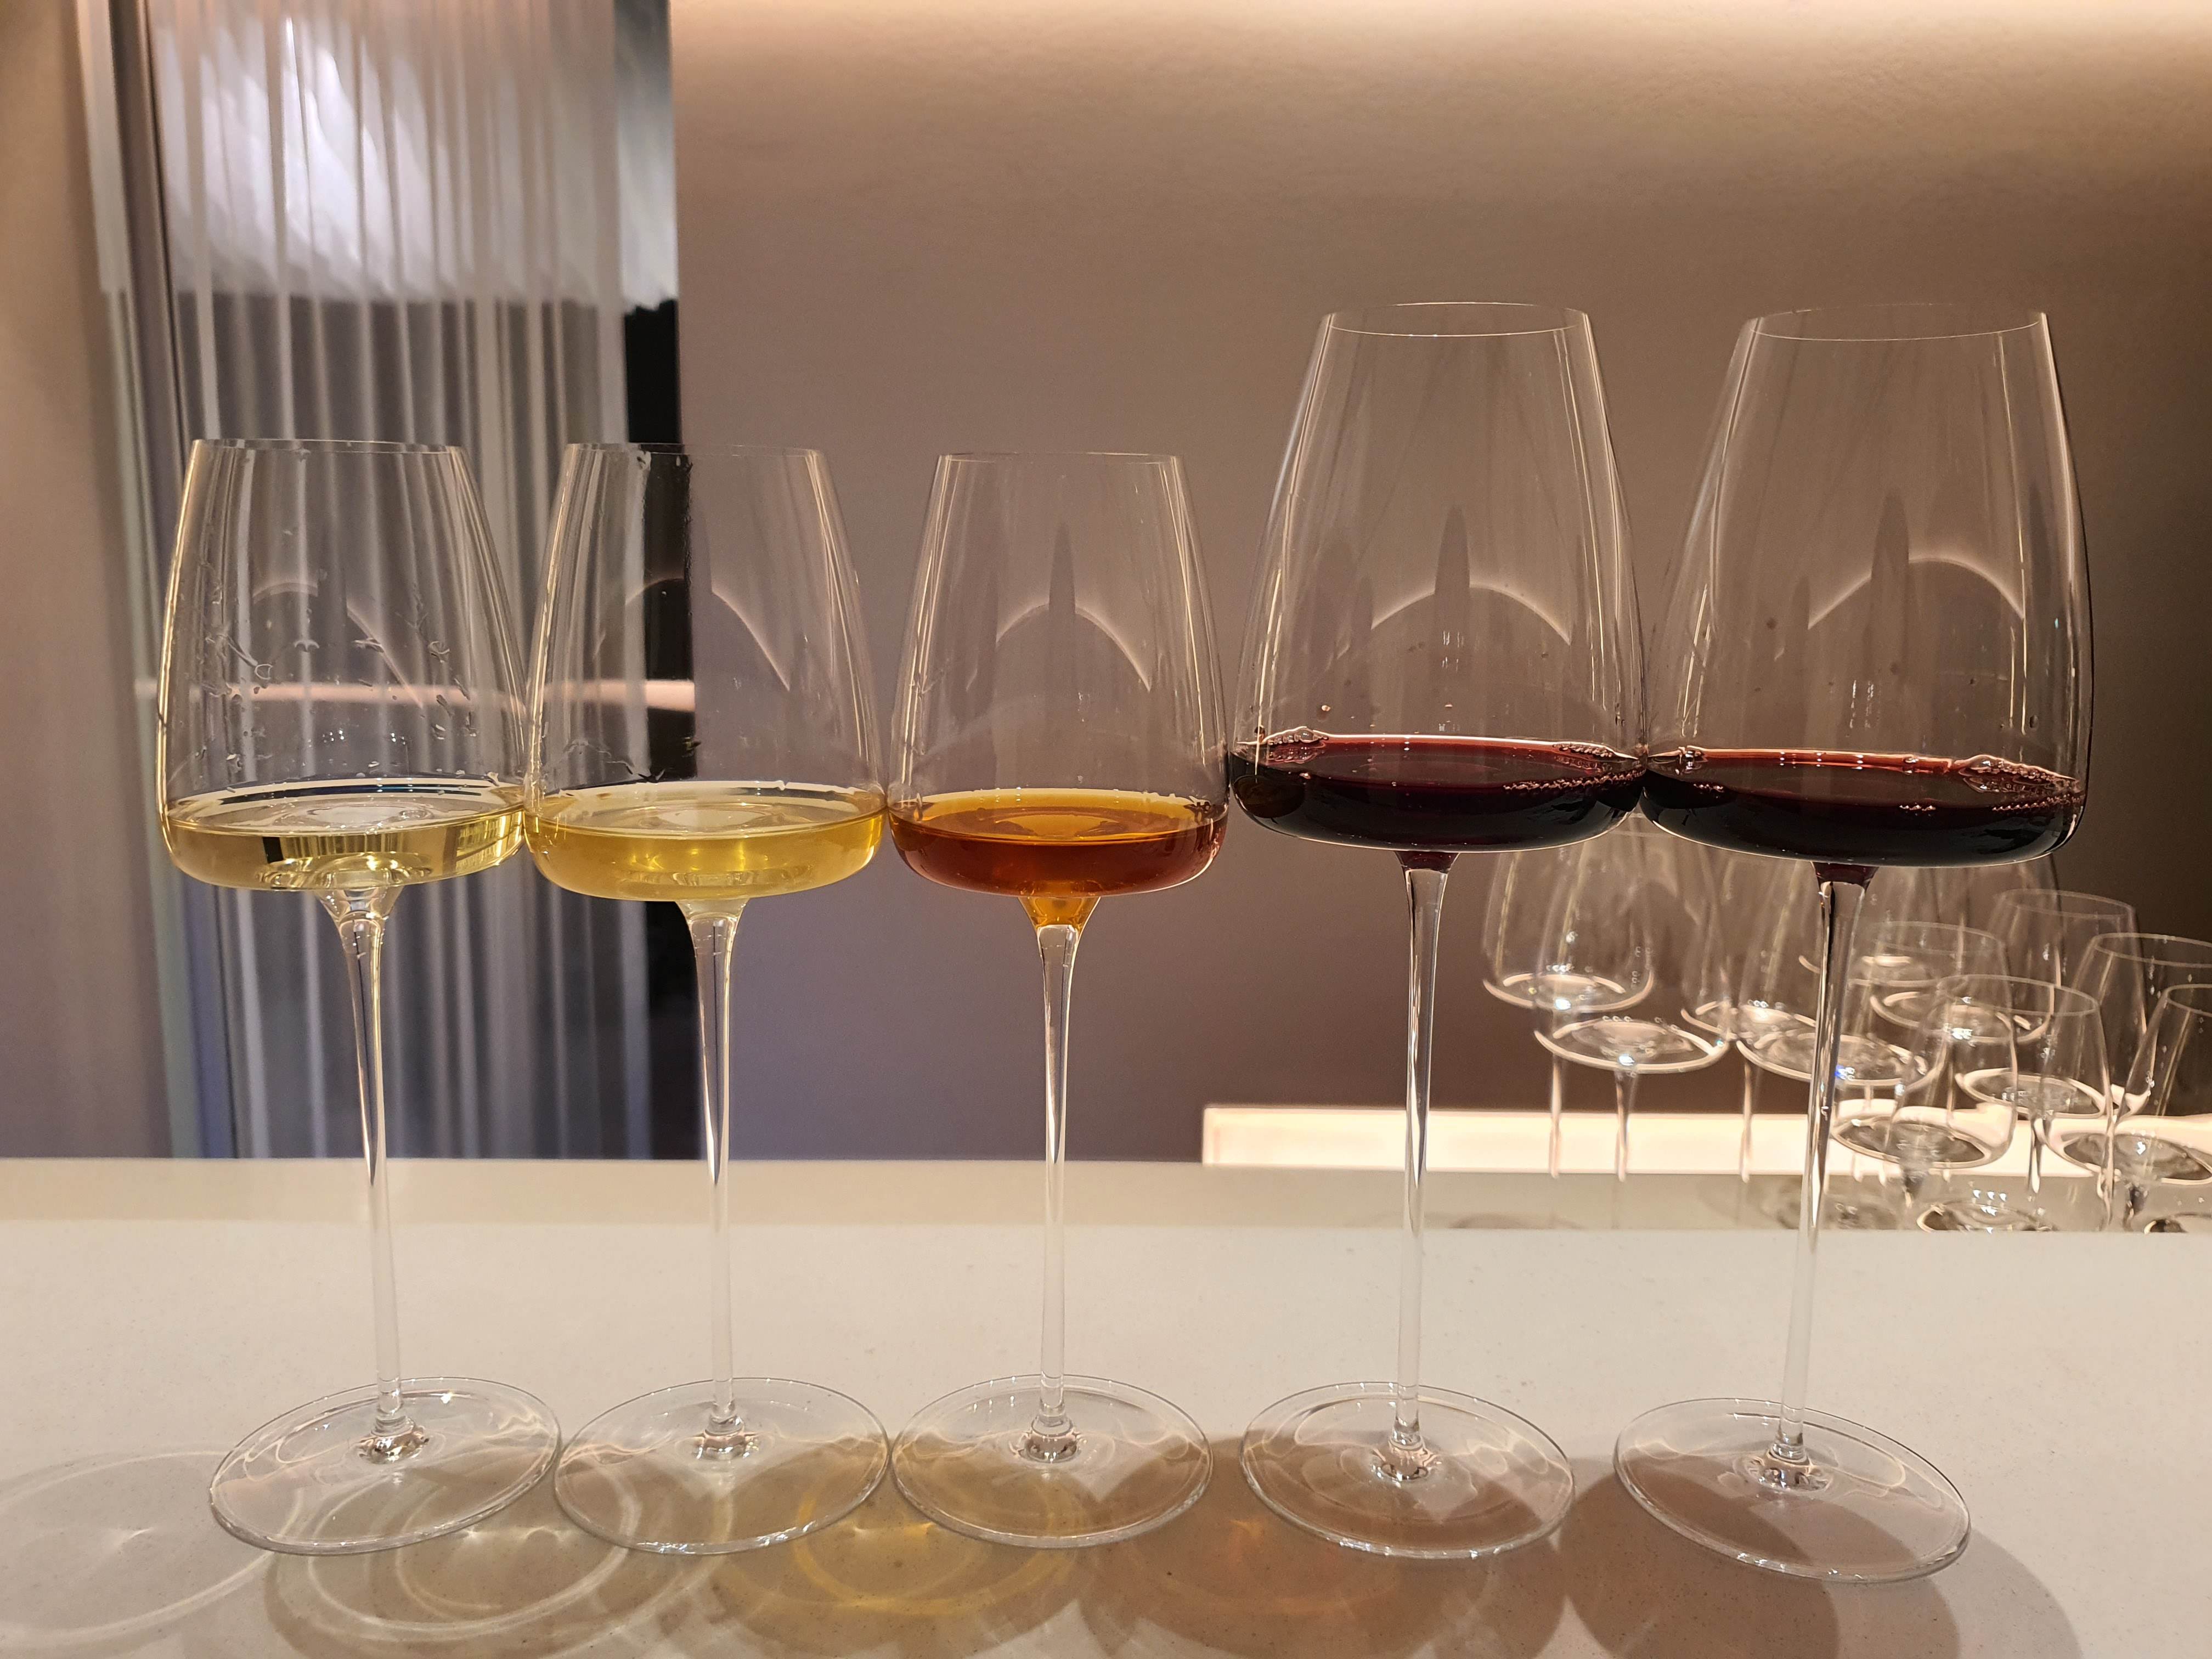 와인소셜 레인보우 코스 와인 화이트와인 3종과 레드와인 2종으로 구성되어 있다.